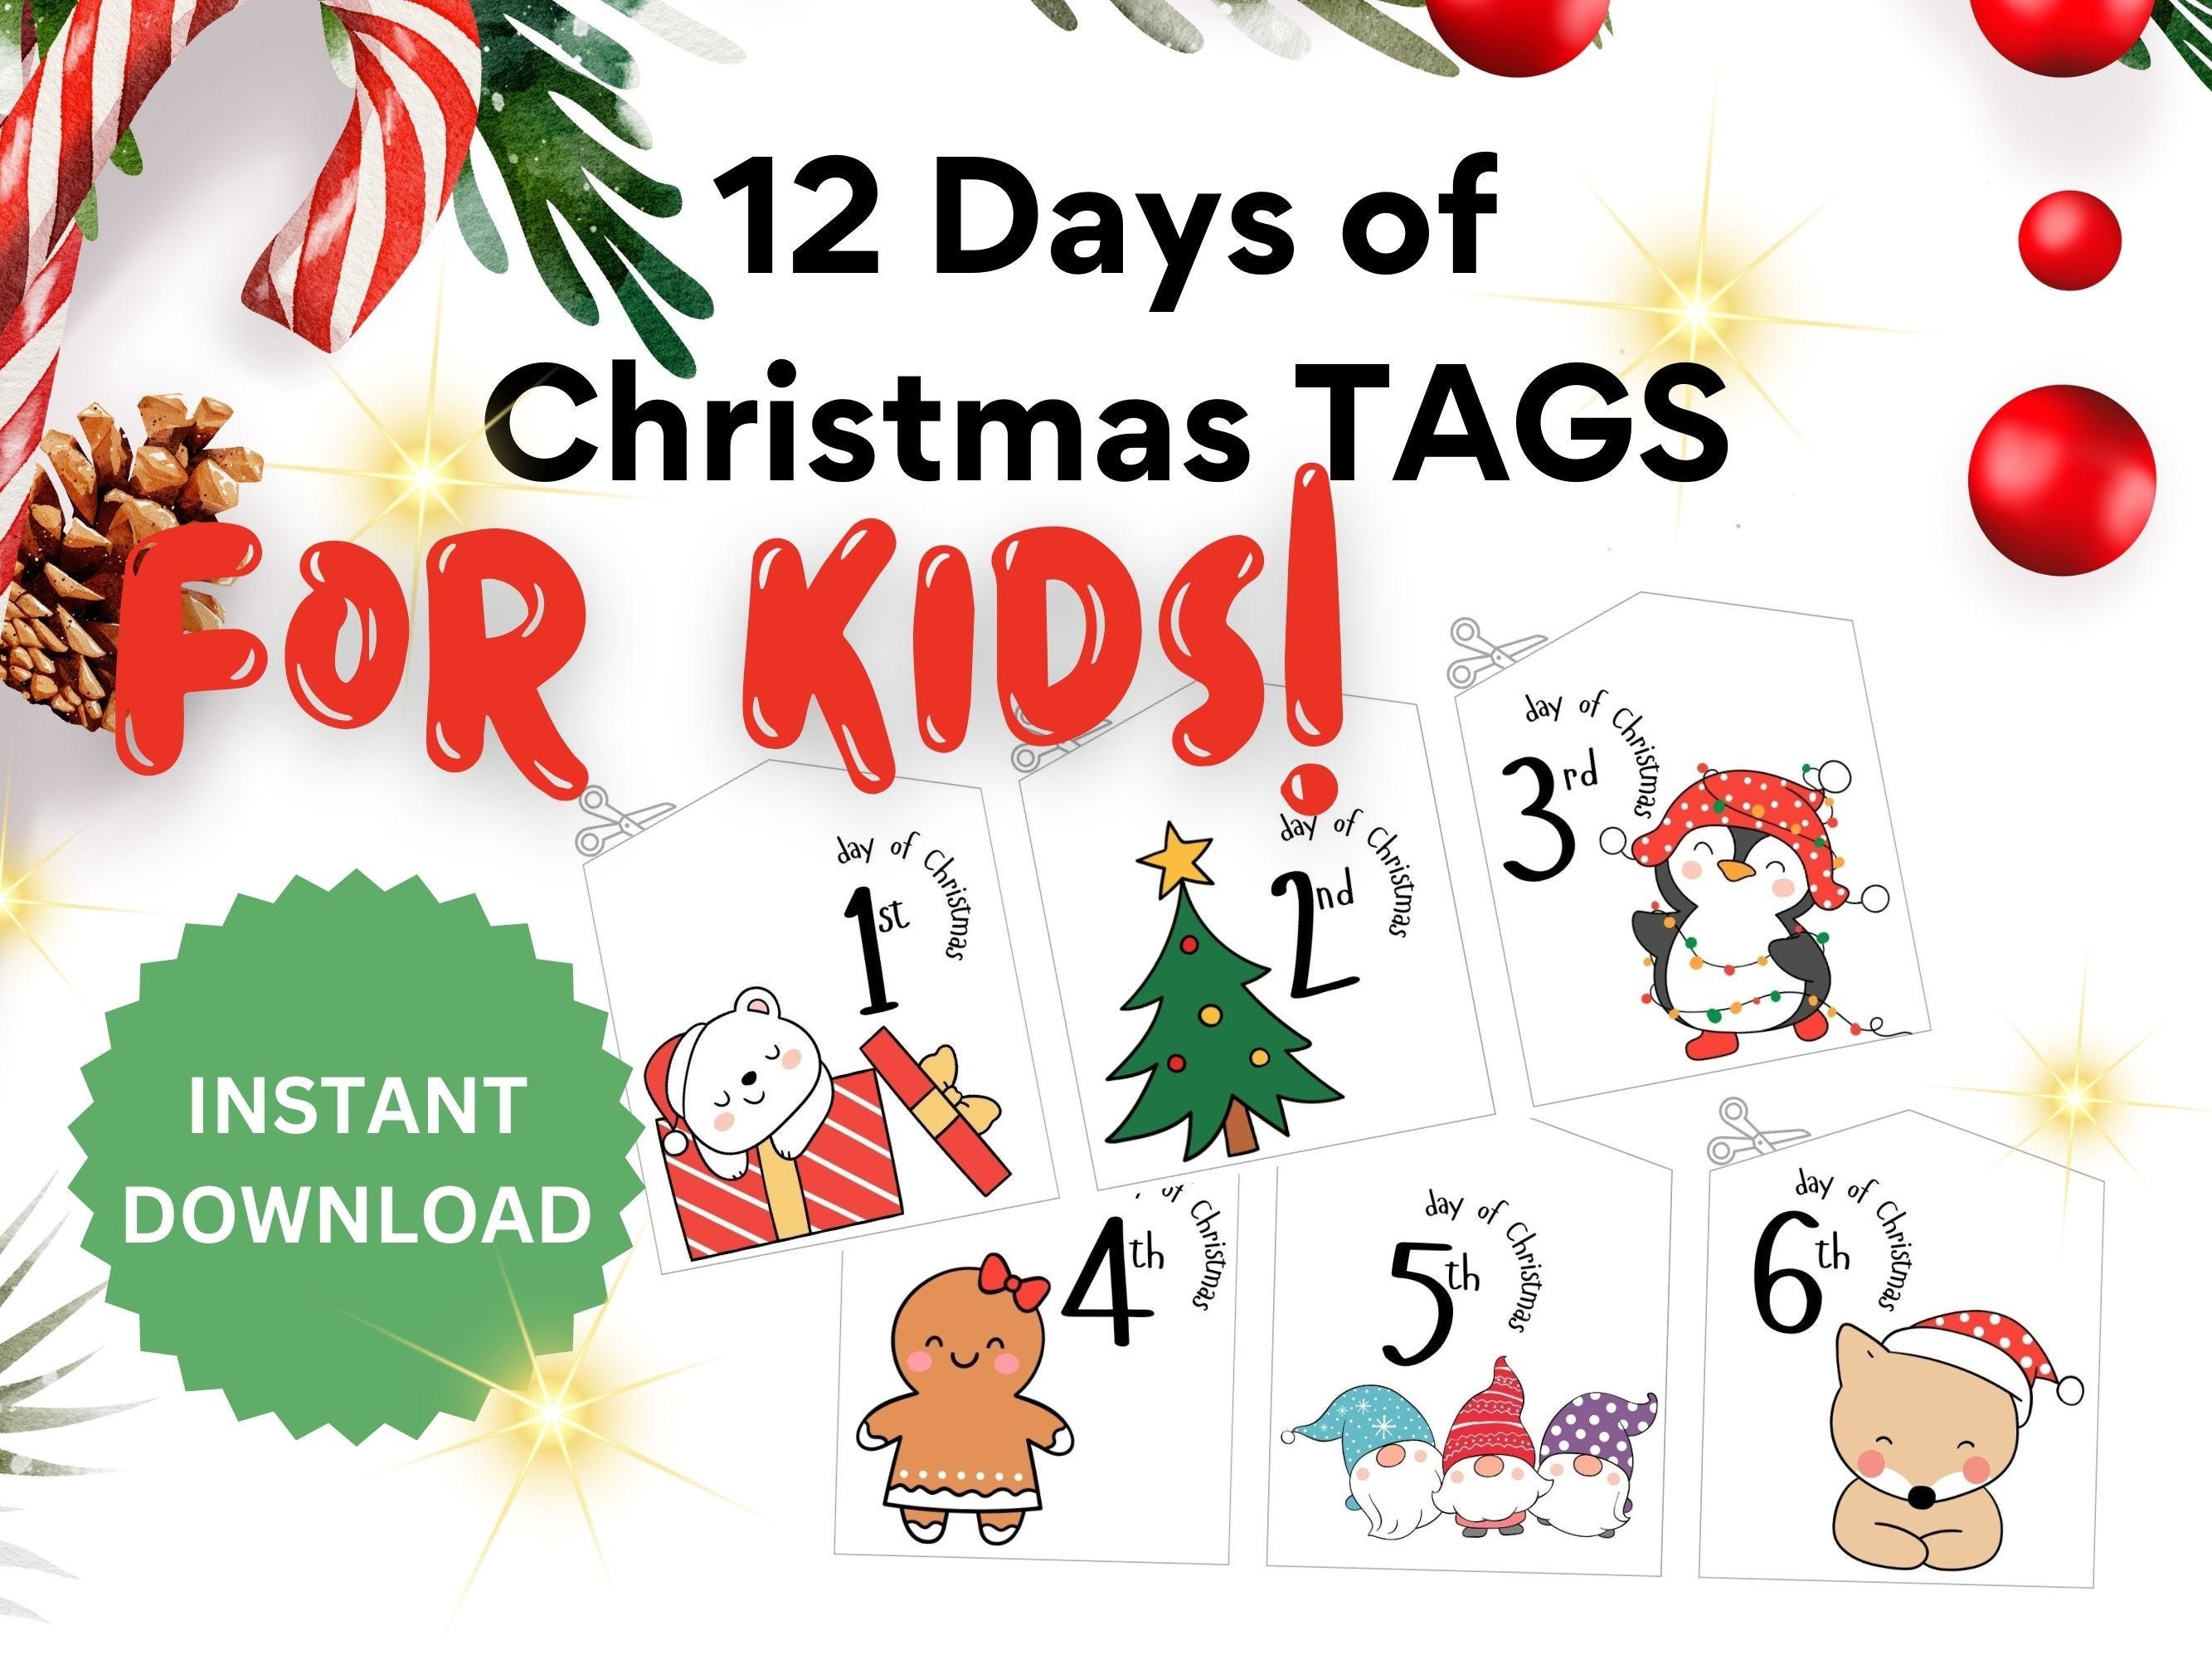 12 Days of Christmas Printable Tags, Gift Tags for Kids, Instant Download, Christmas Tags, Christmas Gift Tags for Kids, Christmas Download,